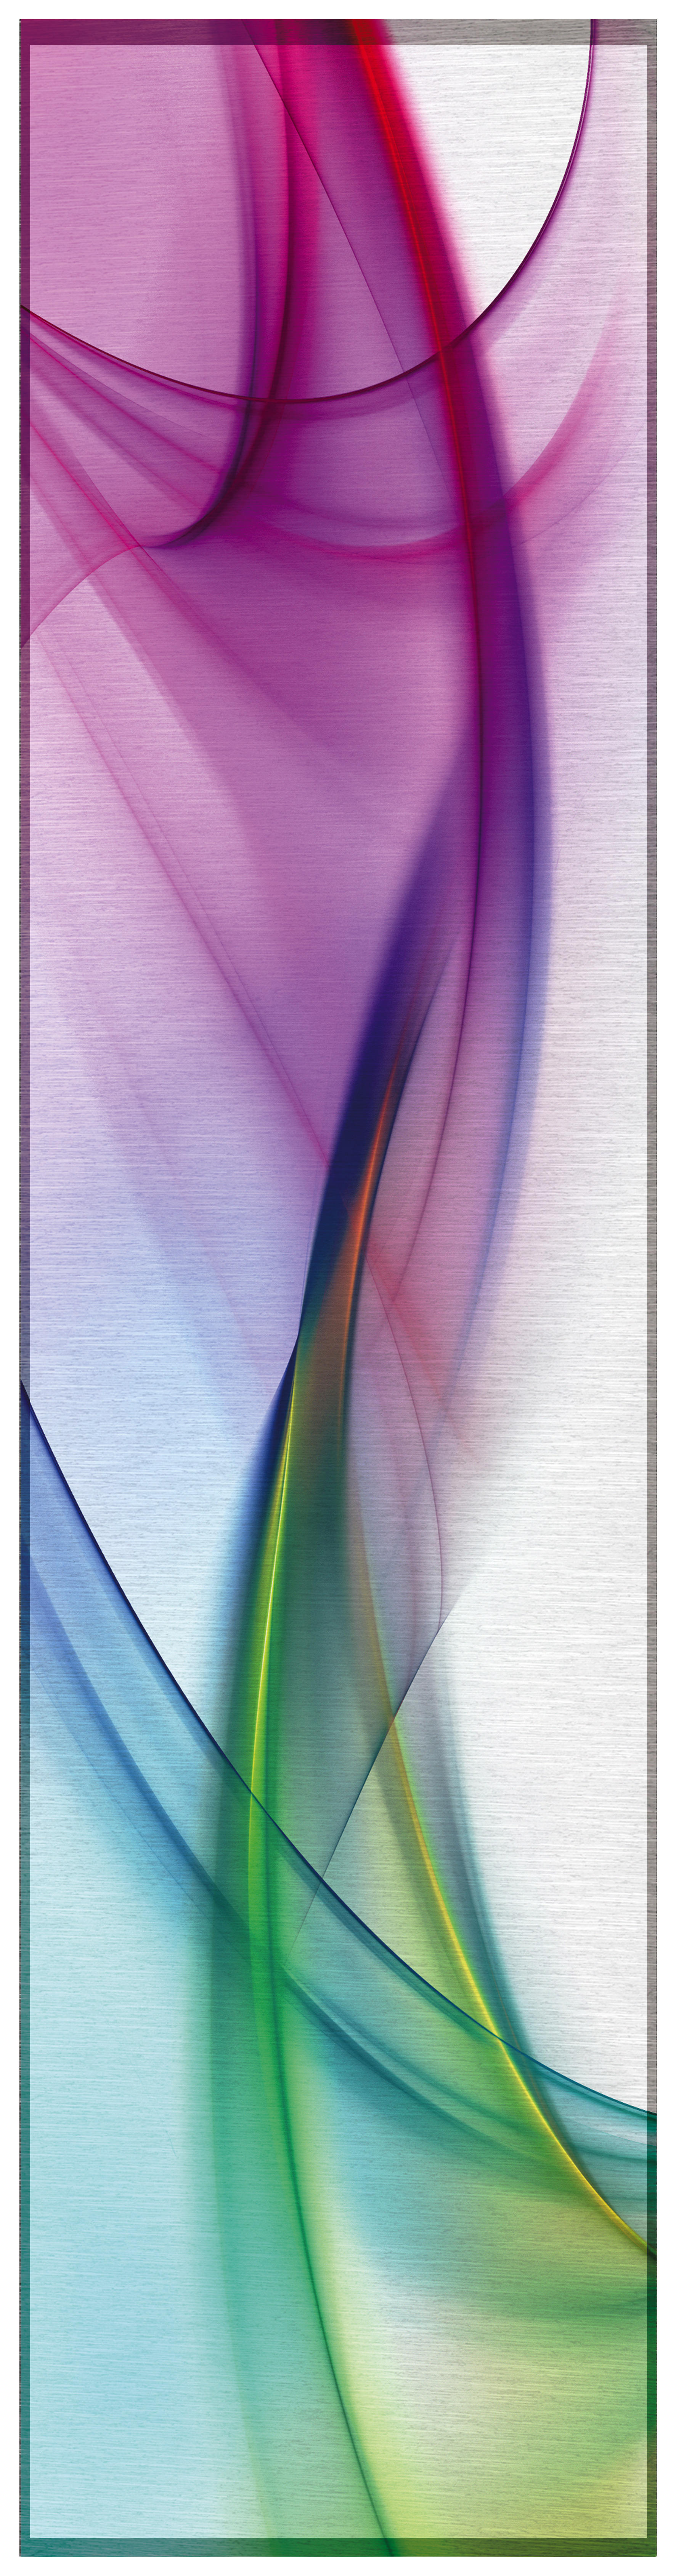 Schiebevorhang Multicolor B/l: Ca. 60x245 Cm Schiebevorhang_batik - multicolor (60,00/245,00cm)